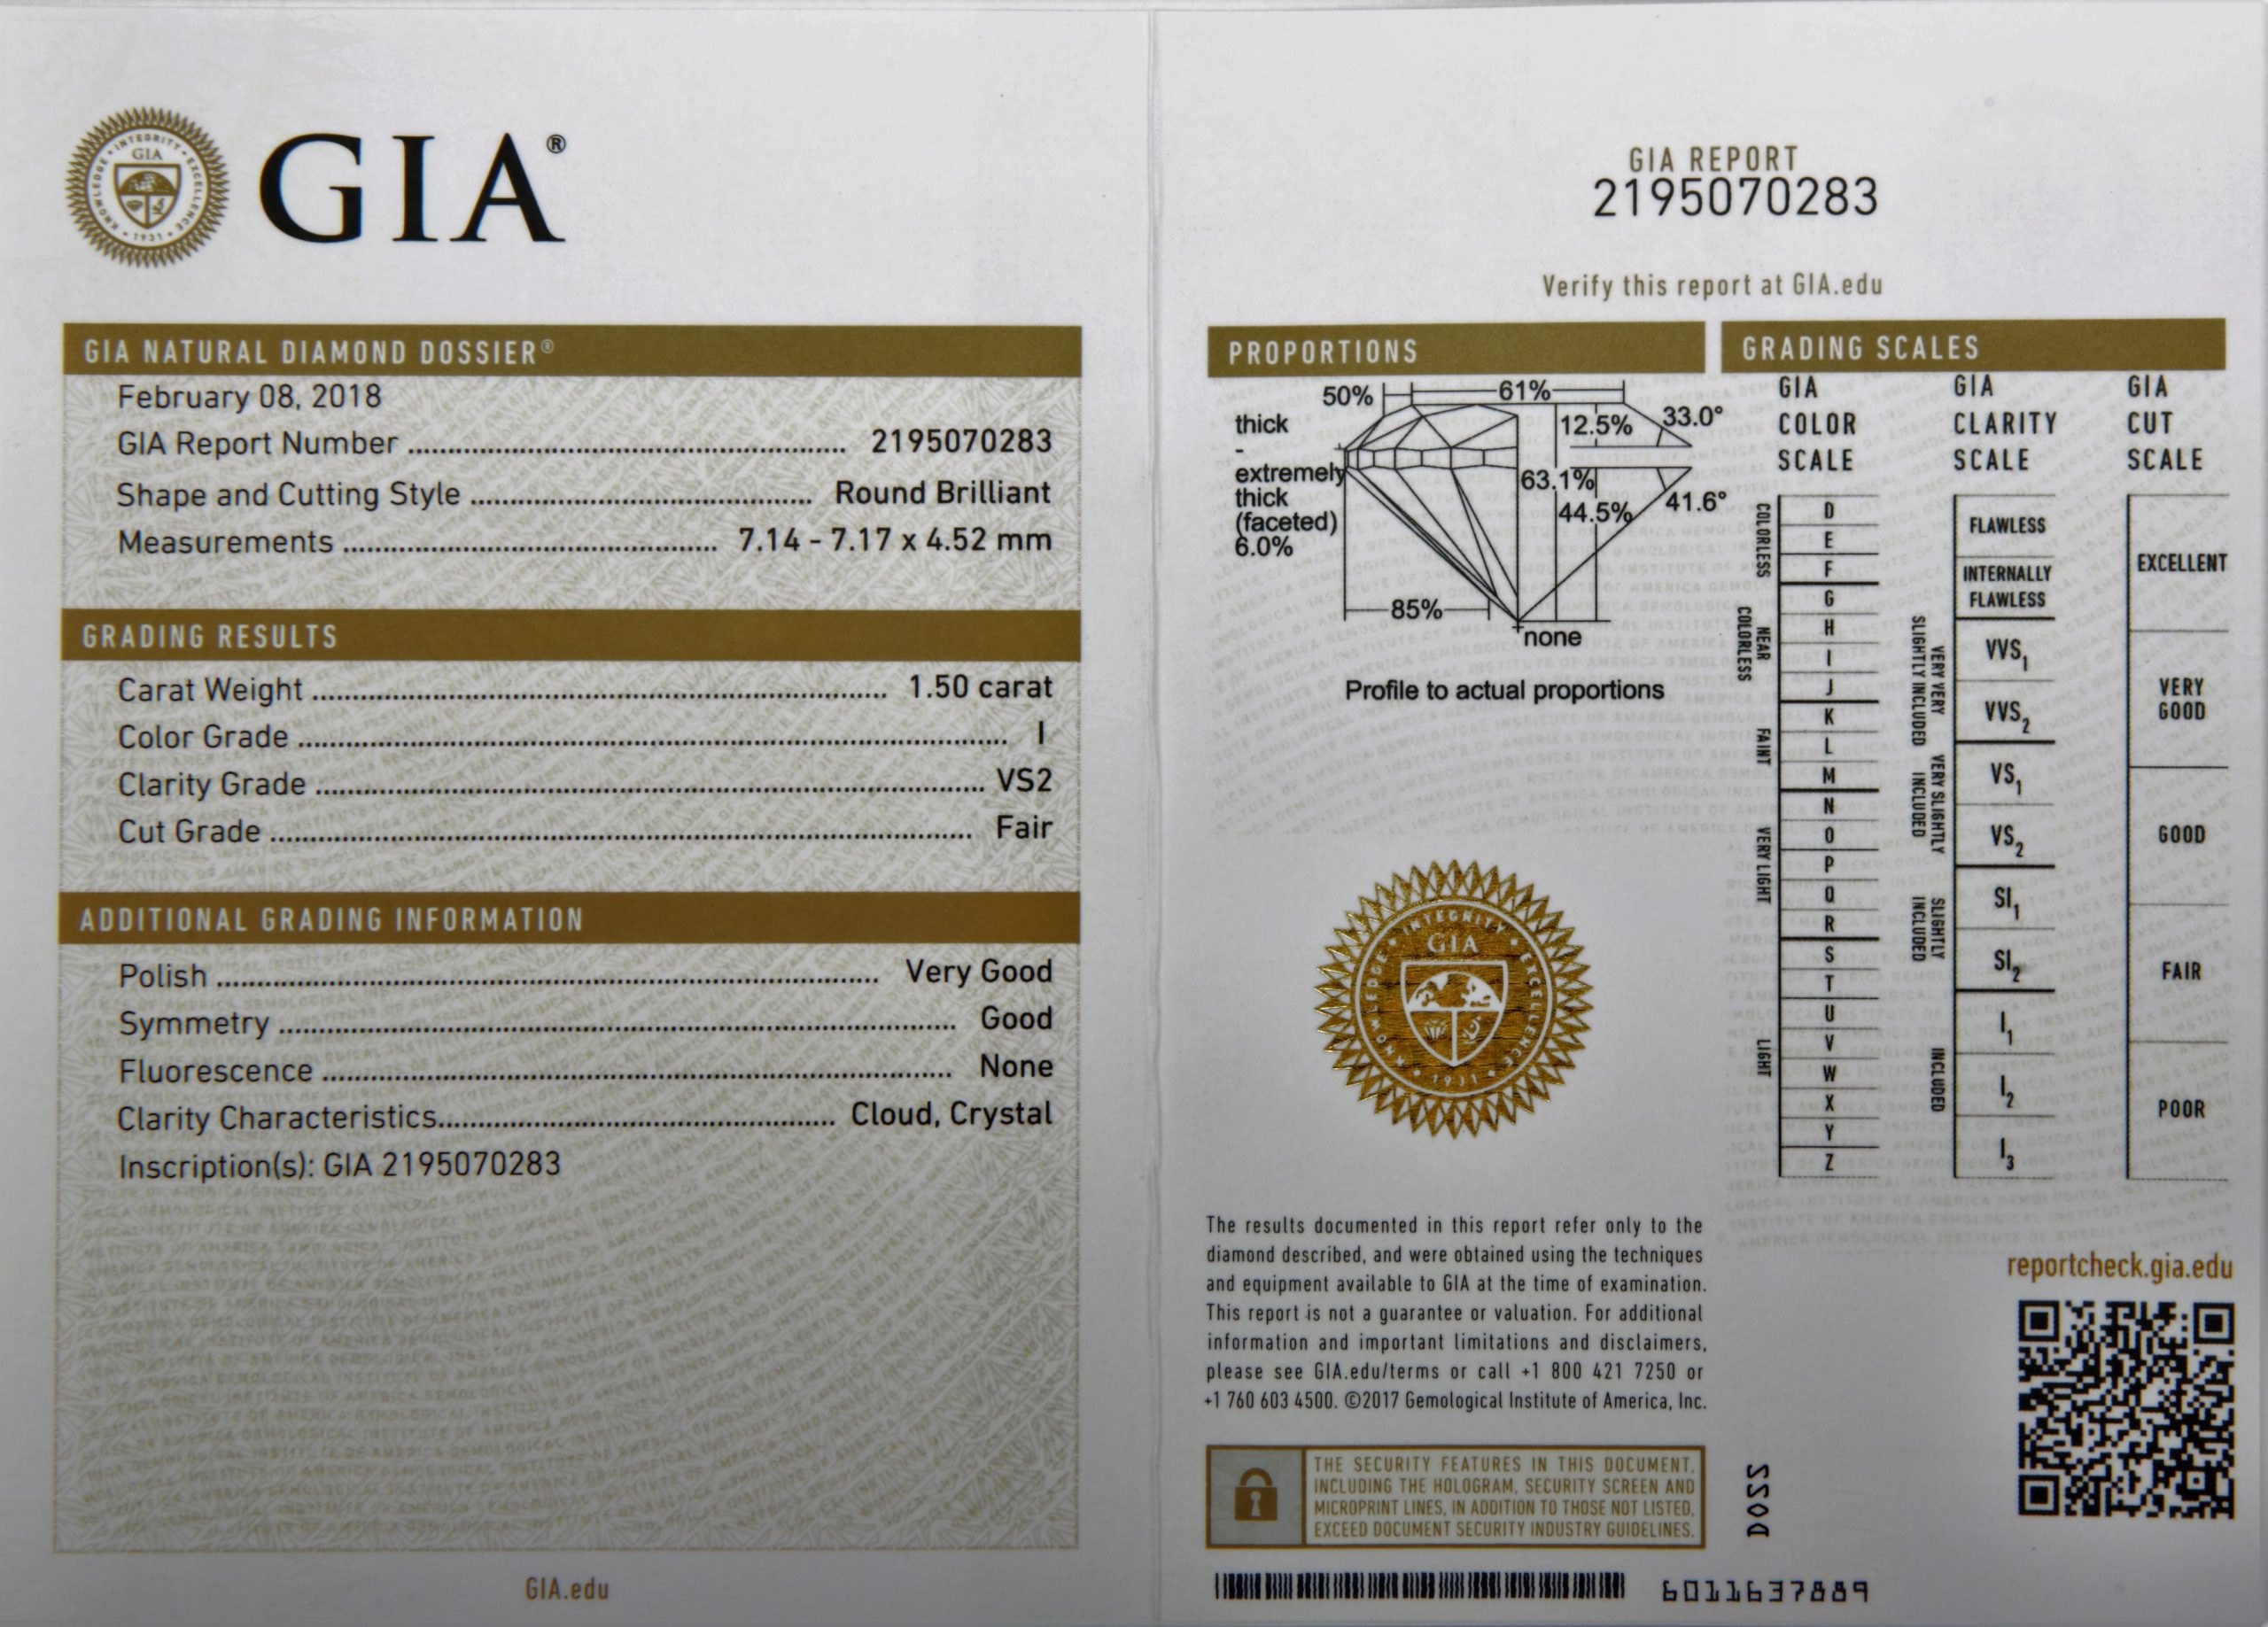 Giải thích những thông tin hiển thị trên giấy chứng nhận GIA